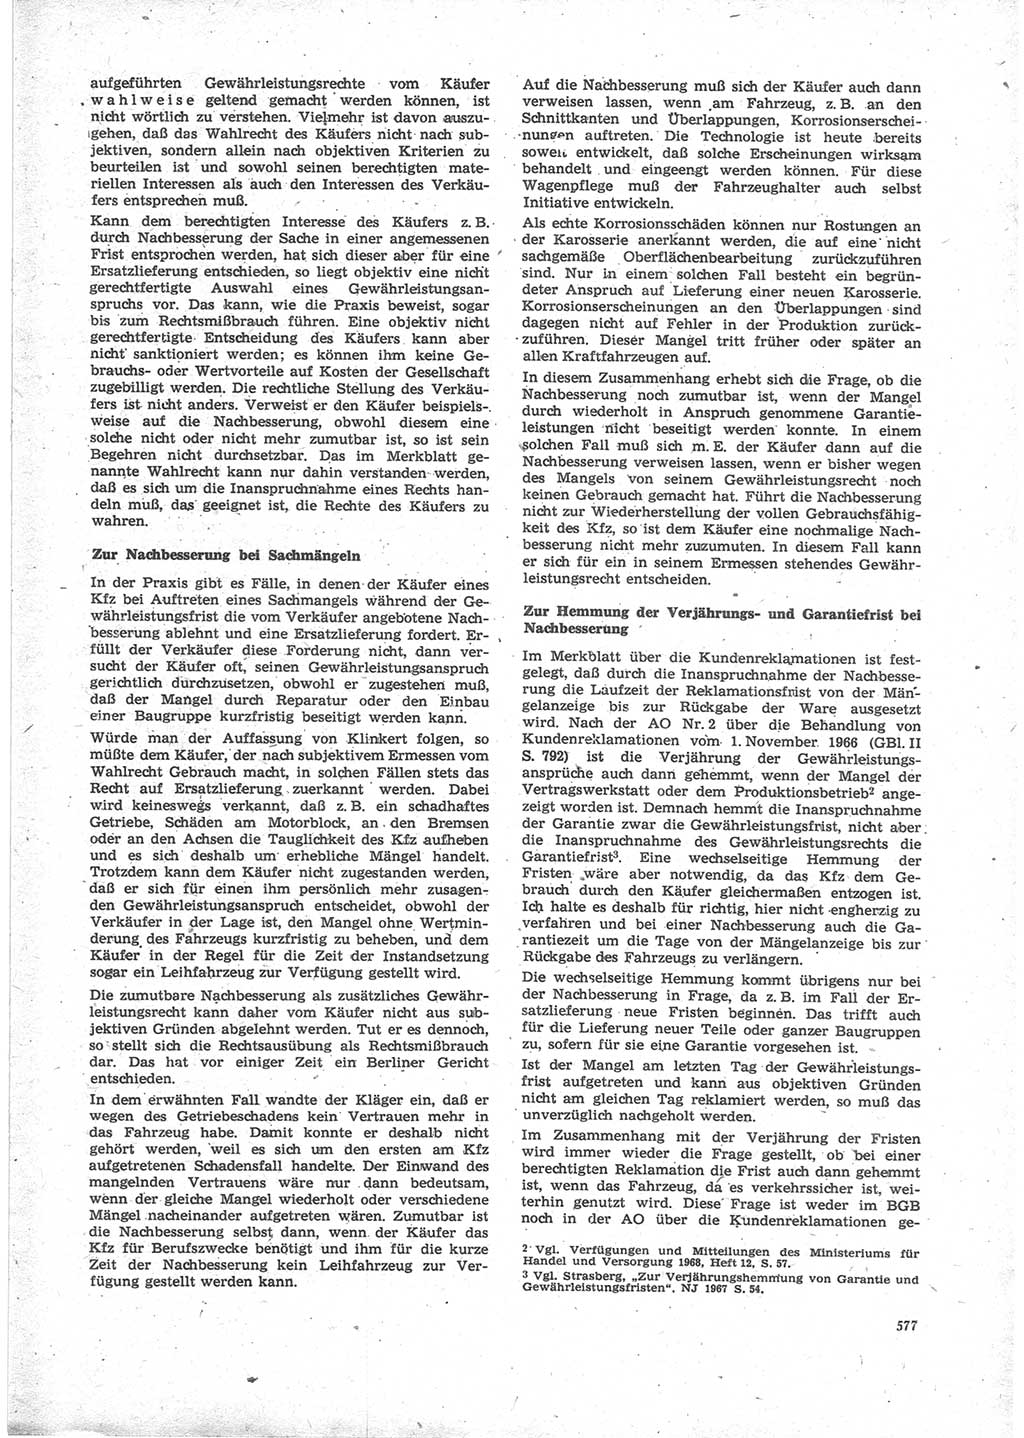 Neue Justiz (NJ), Zeitschrift für Recht und Rechtswissenschaft [Deutsche Demokratische Republik (DDR)], 24. Jahrgang 1970, Seite 577 (NJ DDR 1970, S. 577)